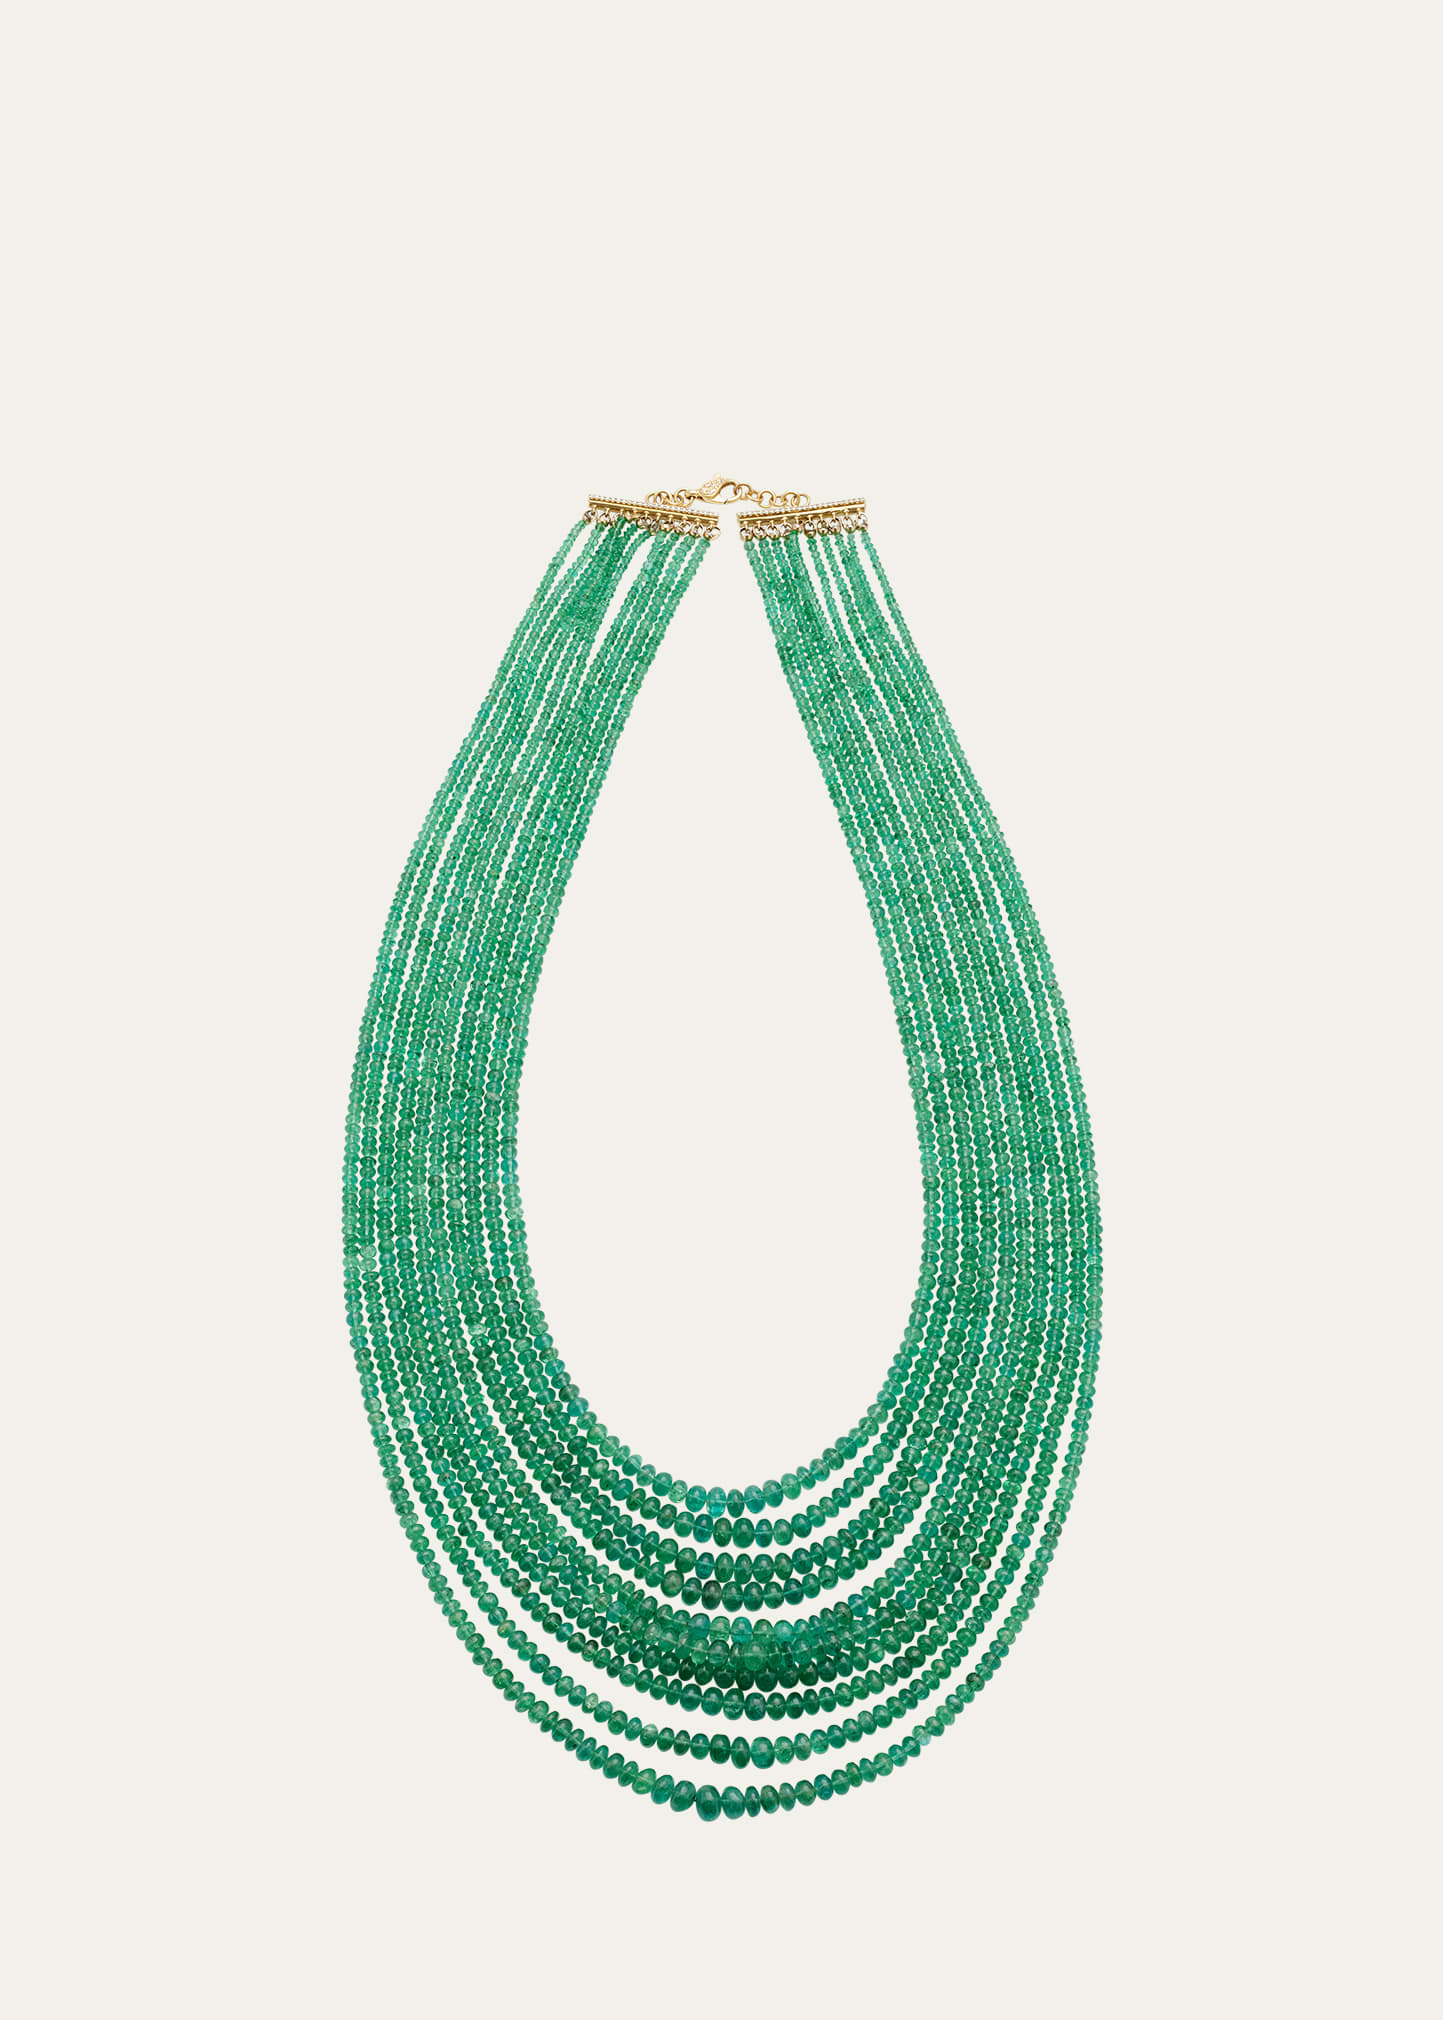 Kimberly McDonald Gemfield's Zambian Emerald Multi-Strand Necklace